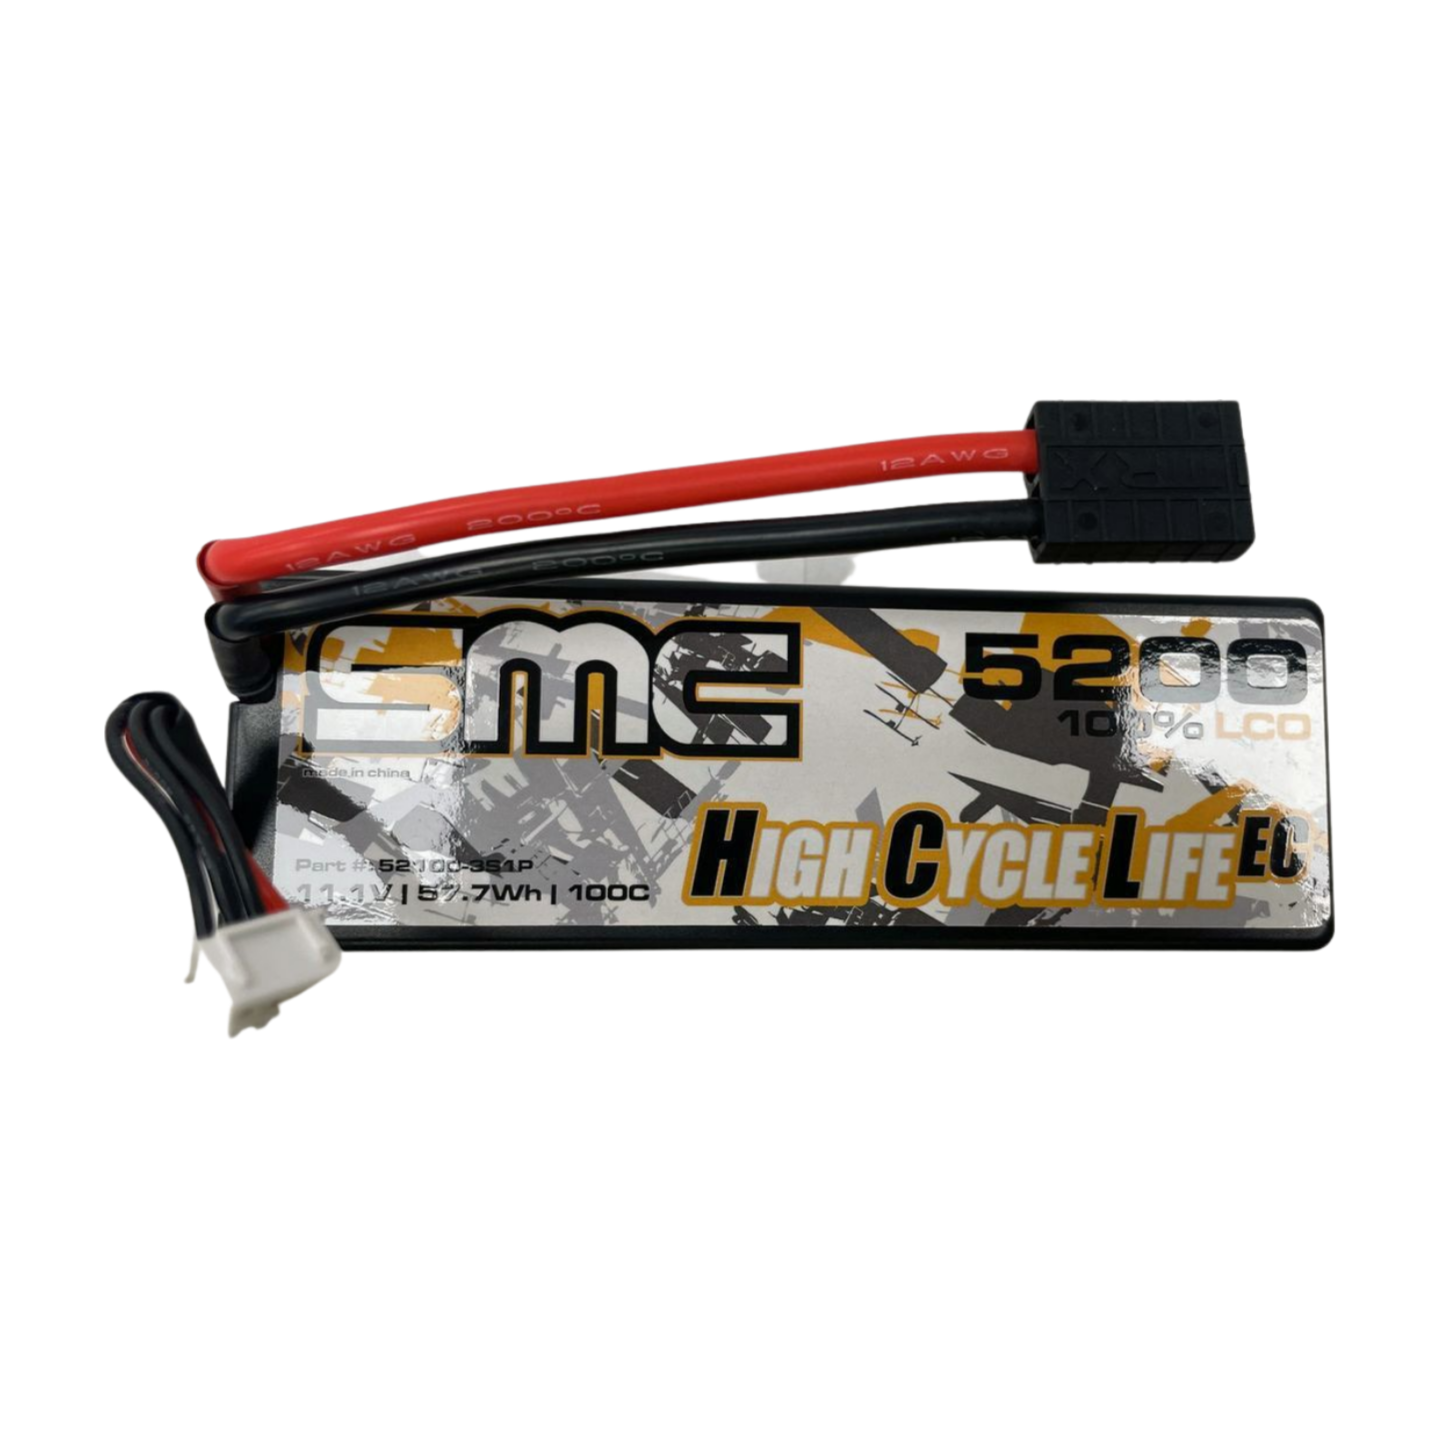 SMC HCL-EC 3S 11.1V 5200mAh 100C Wired Hardcase LiPo Battery